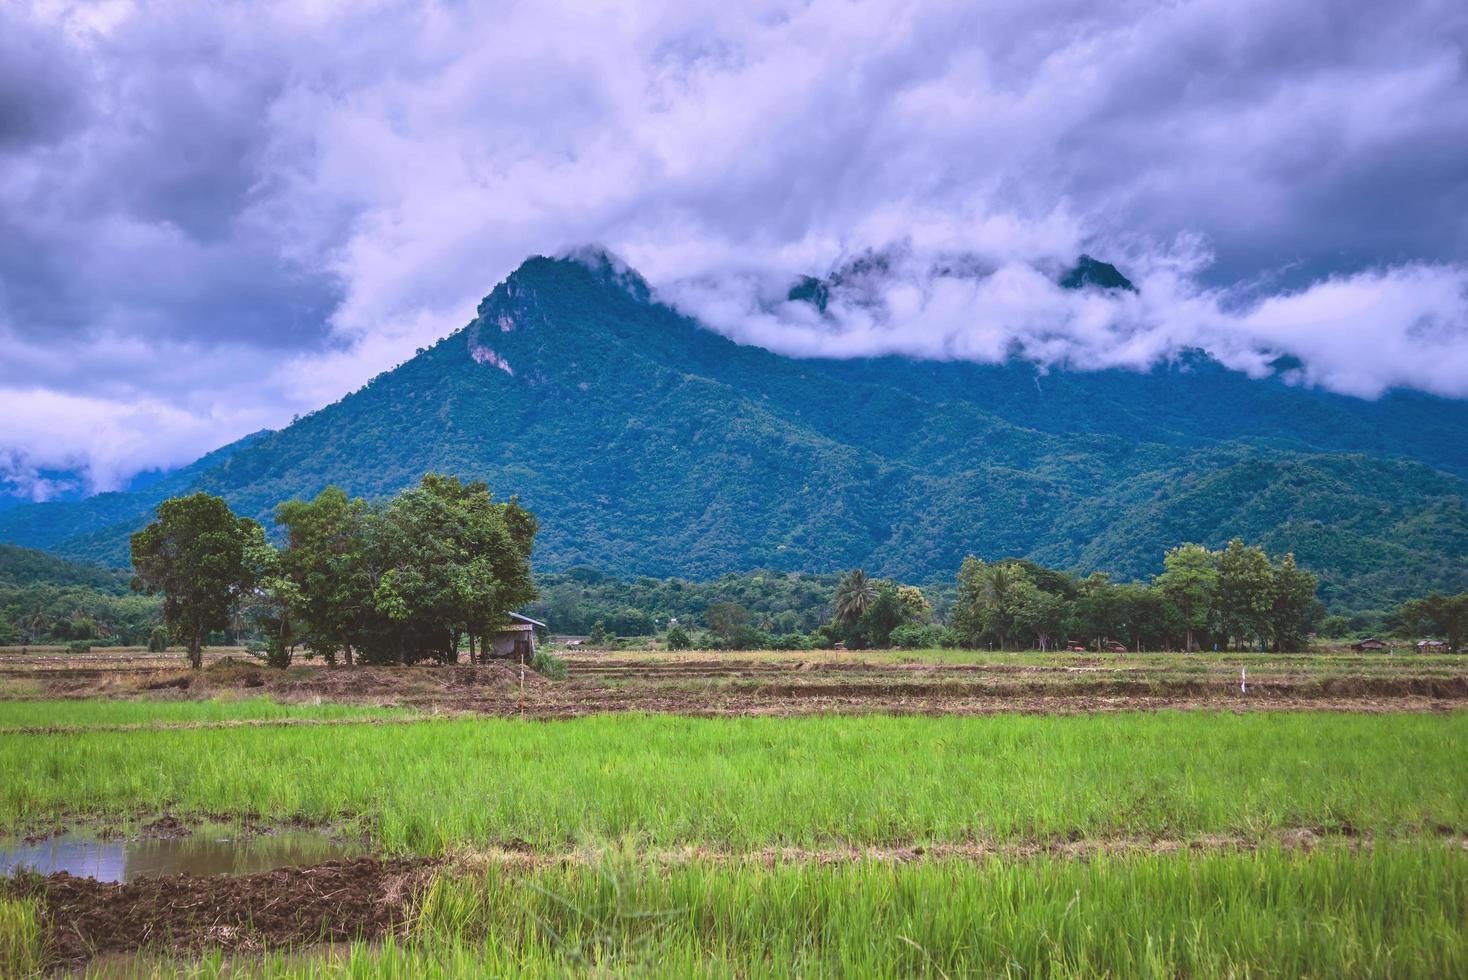 dimma över bergen.i det regniga vädret på landsbygden. risfält foto